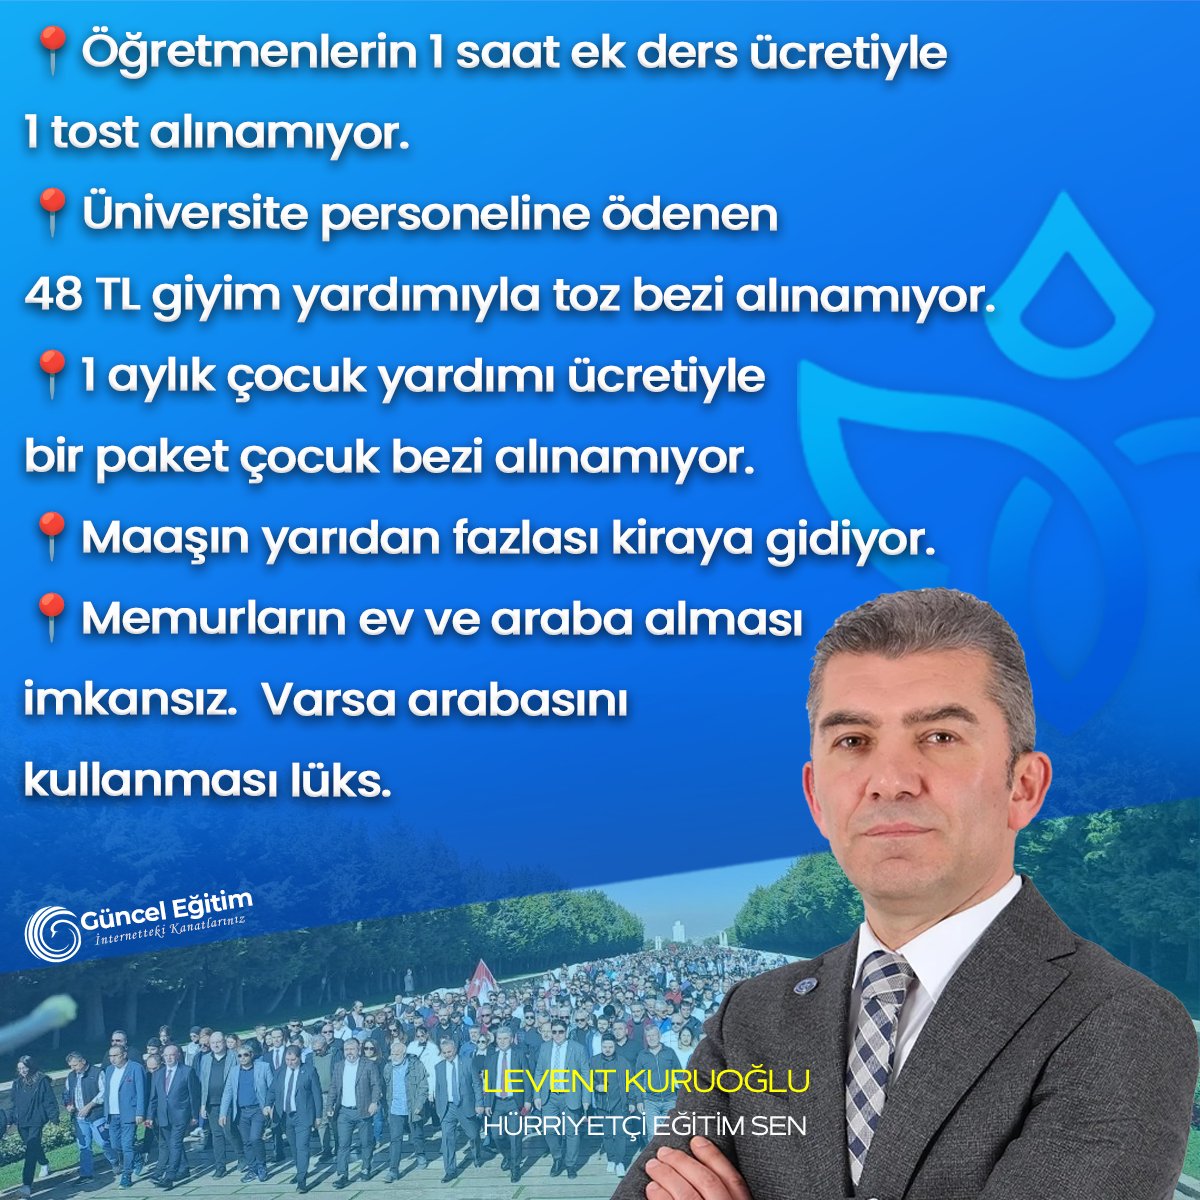 Haftanın paylaşımı Hürriyetçi Eğitim-Sen Başkanı @leventkuruoglu 'ndan...